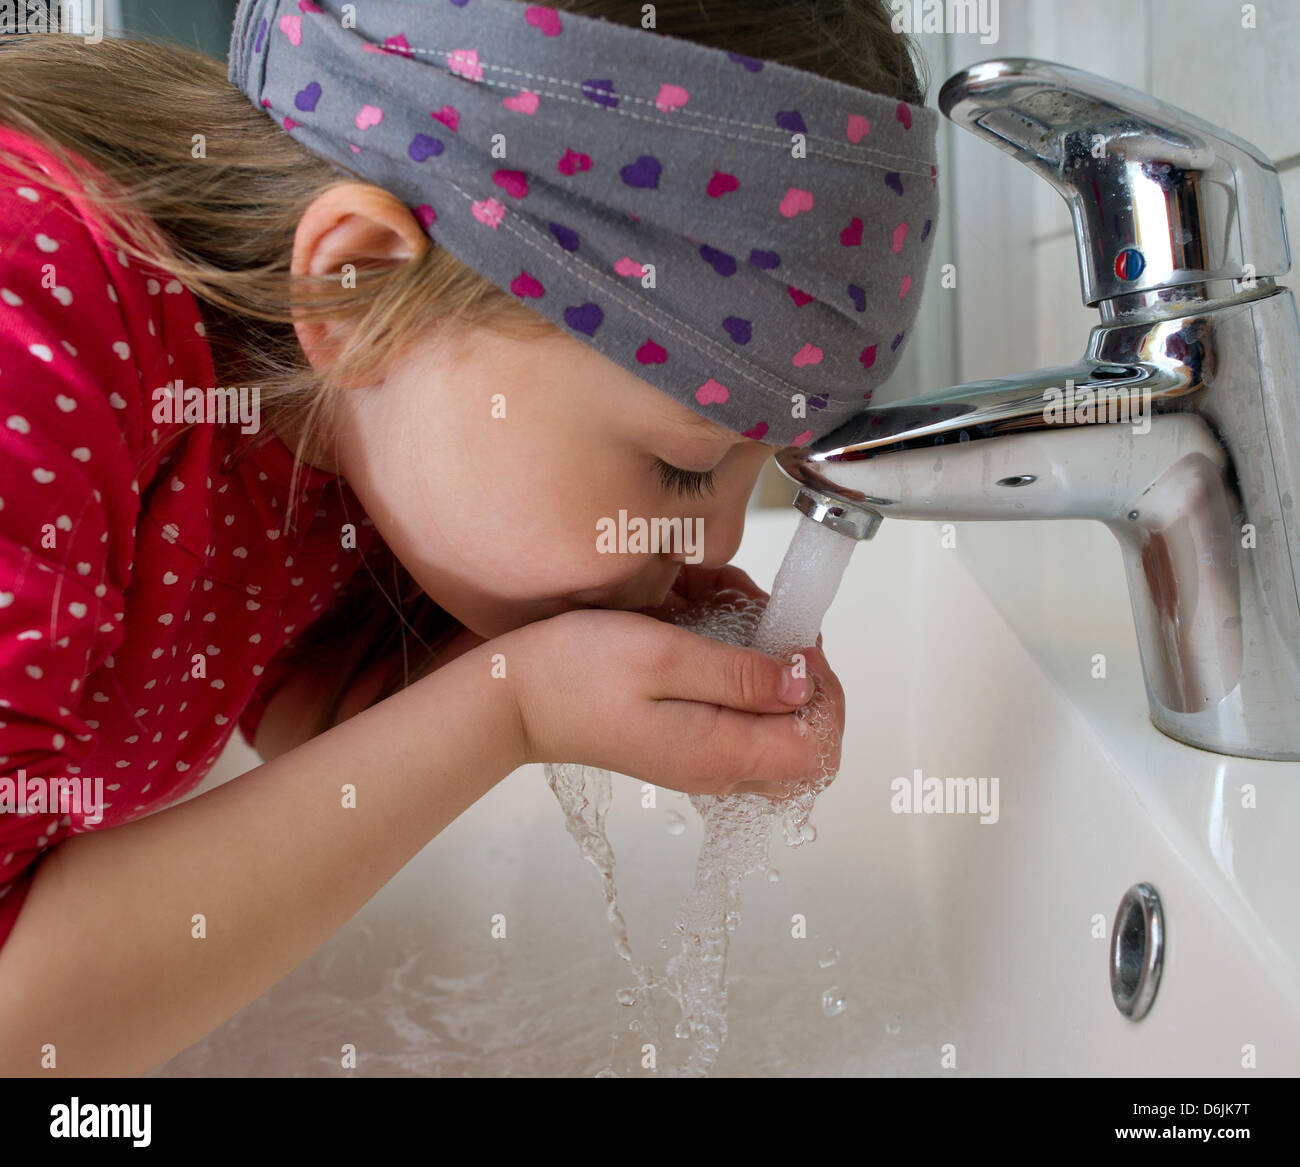 Воняет из крана. Водопроводная вода. Чистая вода из крана. Ребенок пьет воду из под крана. Питьевая вода из под крана.